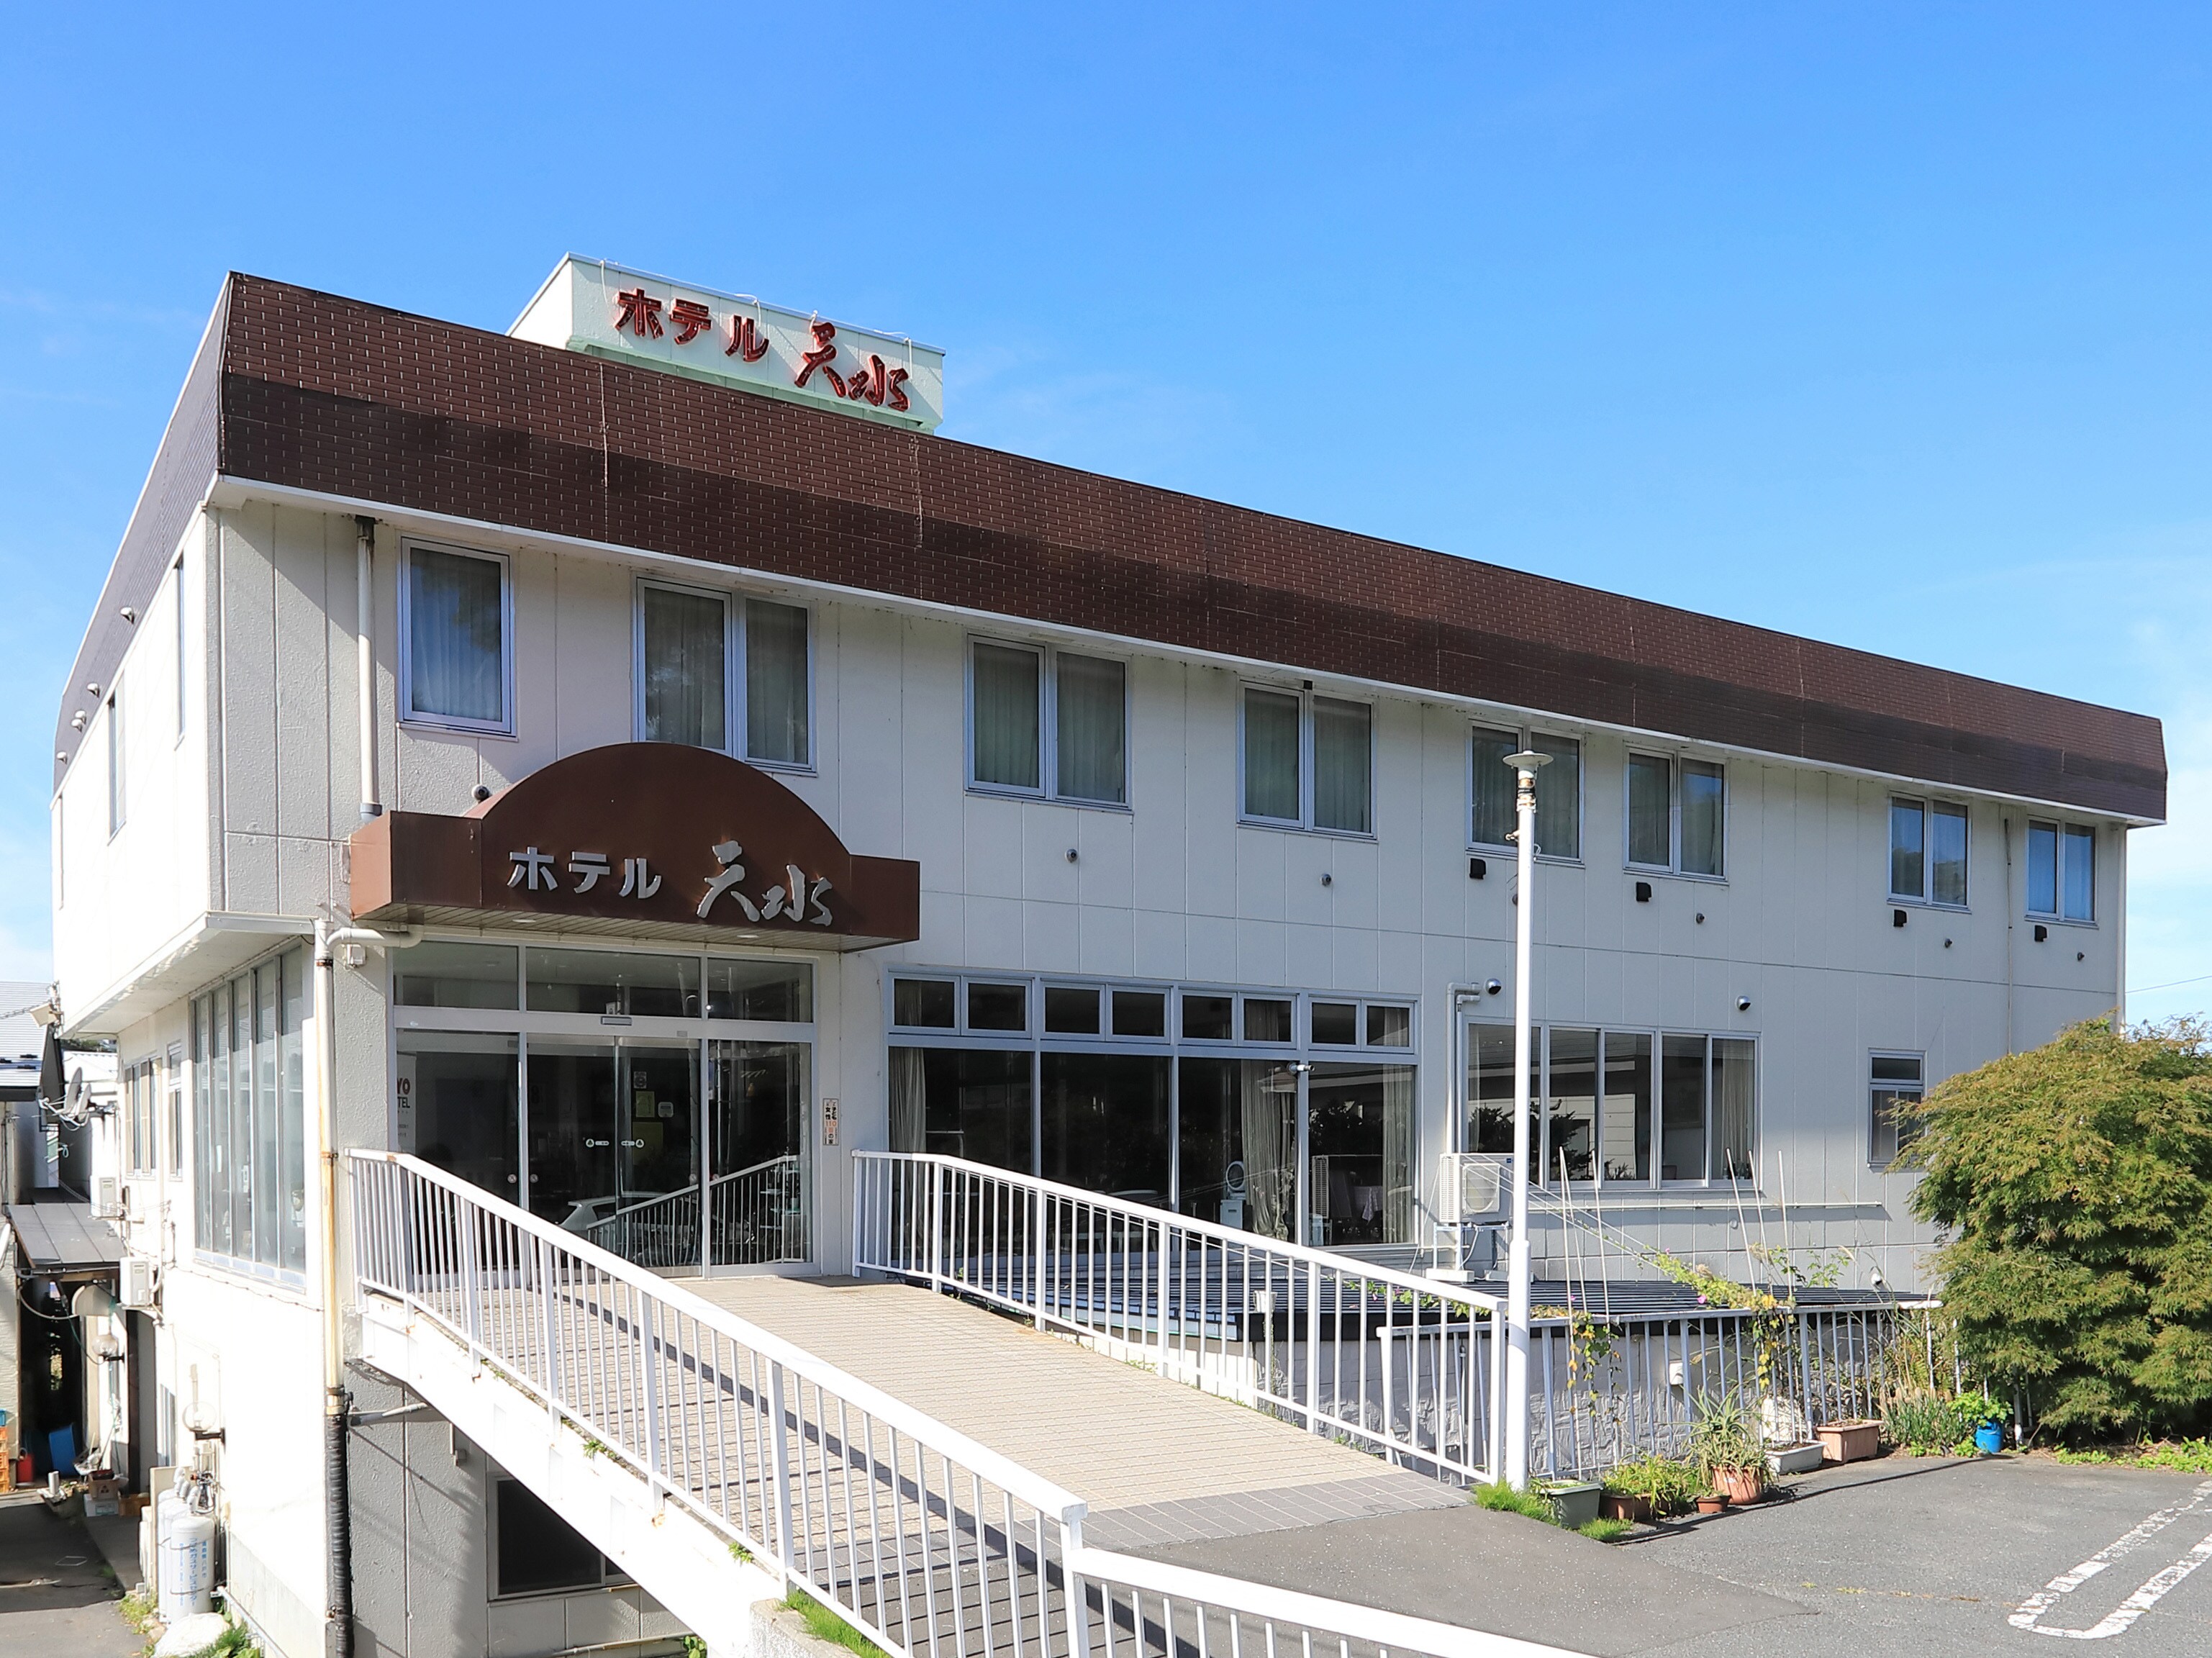 外观 * 酒店距离三泽站有 1 分钟步行路程。请作为商务和观光的据点使用。